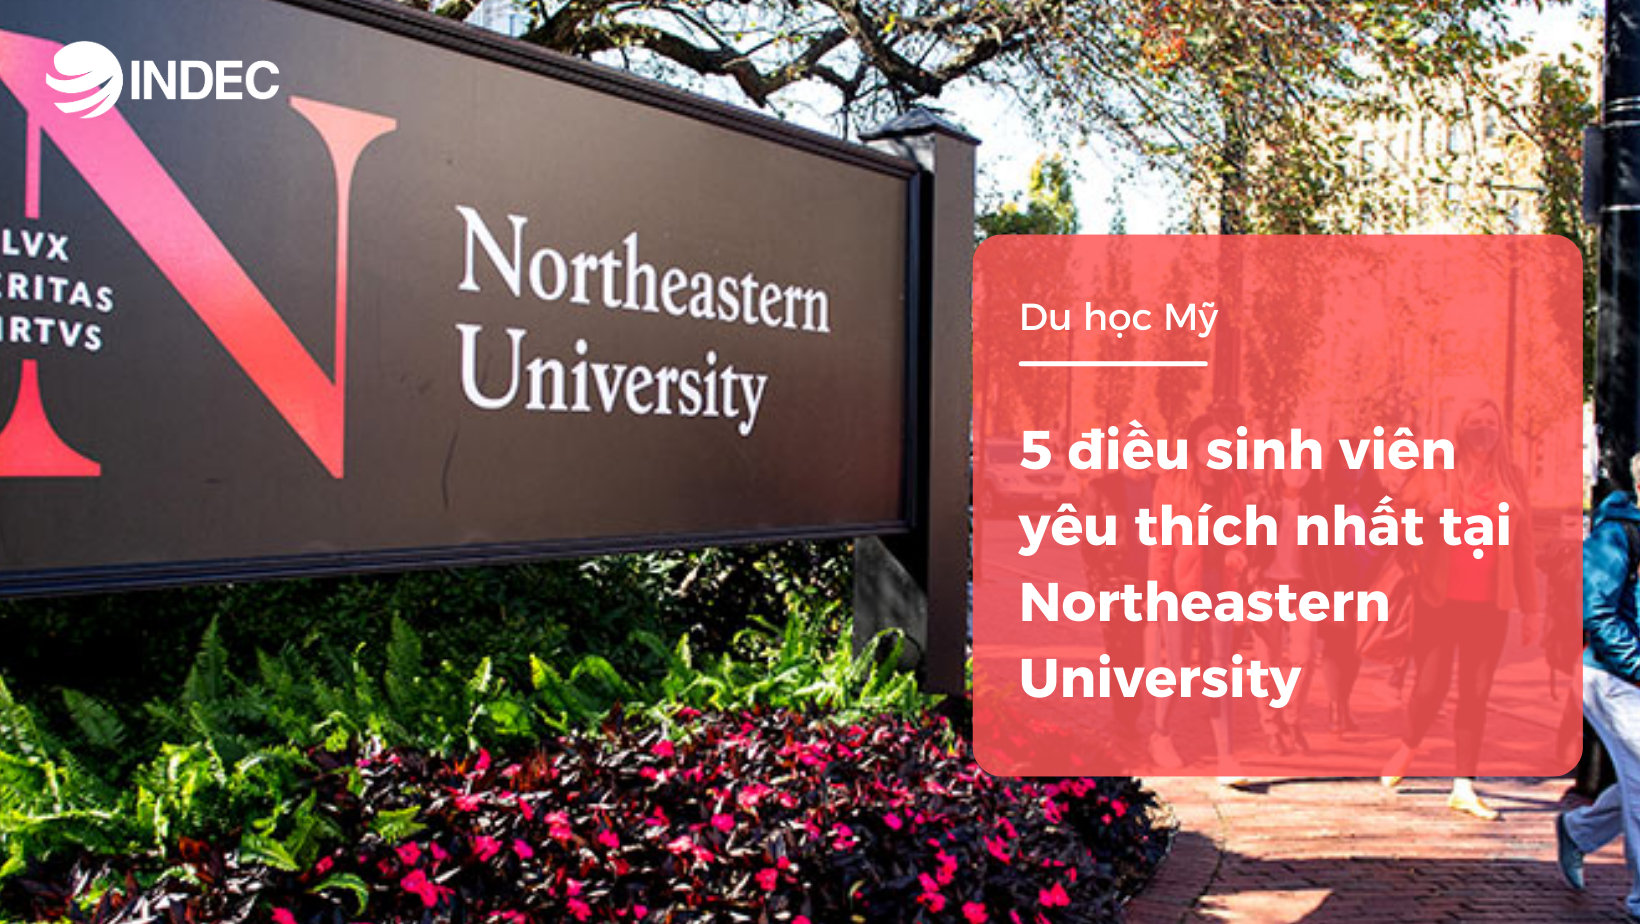 5 điều sinh viên yêu thích nhất tại Northeastern University